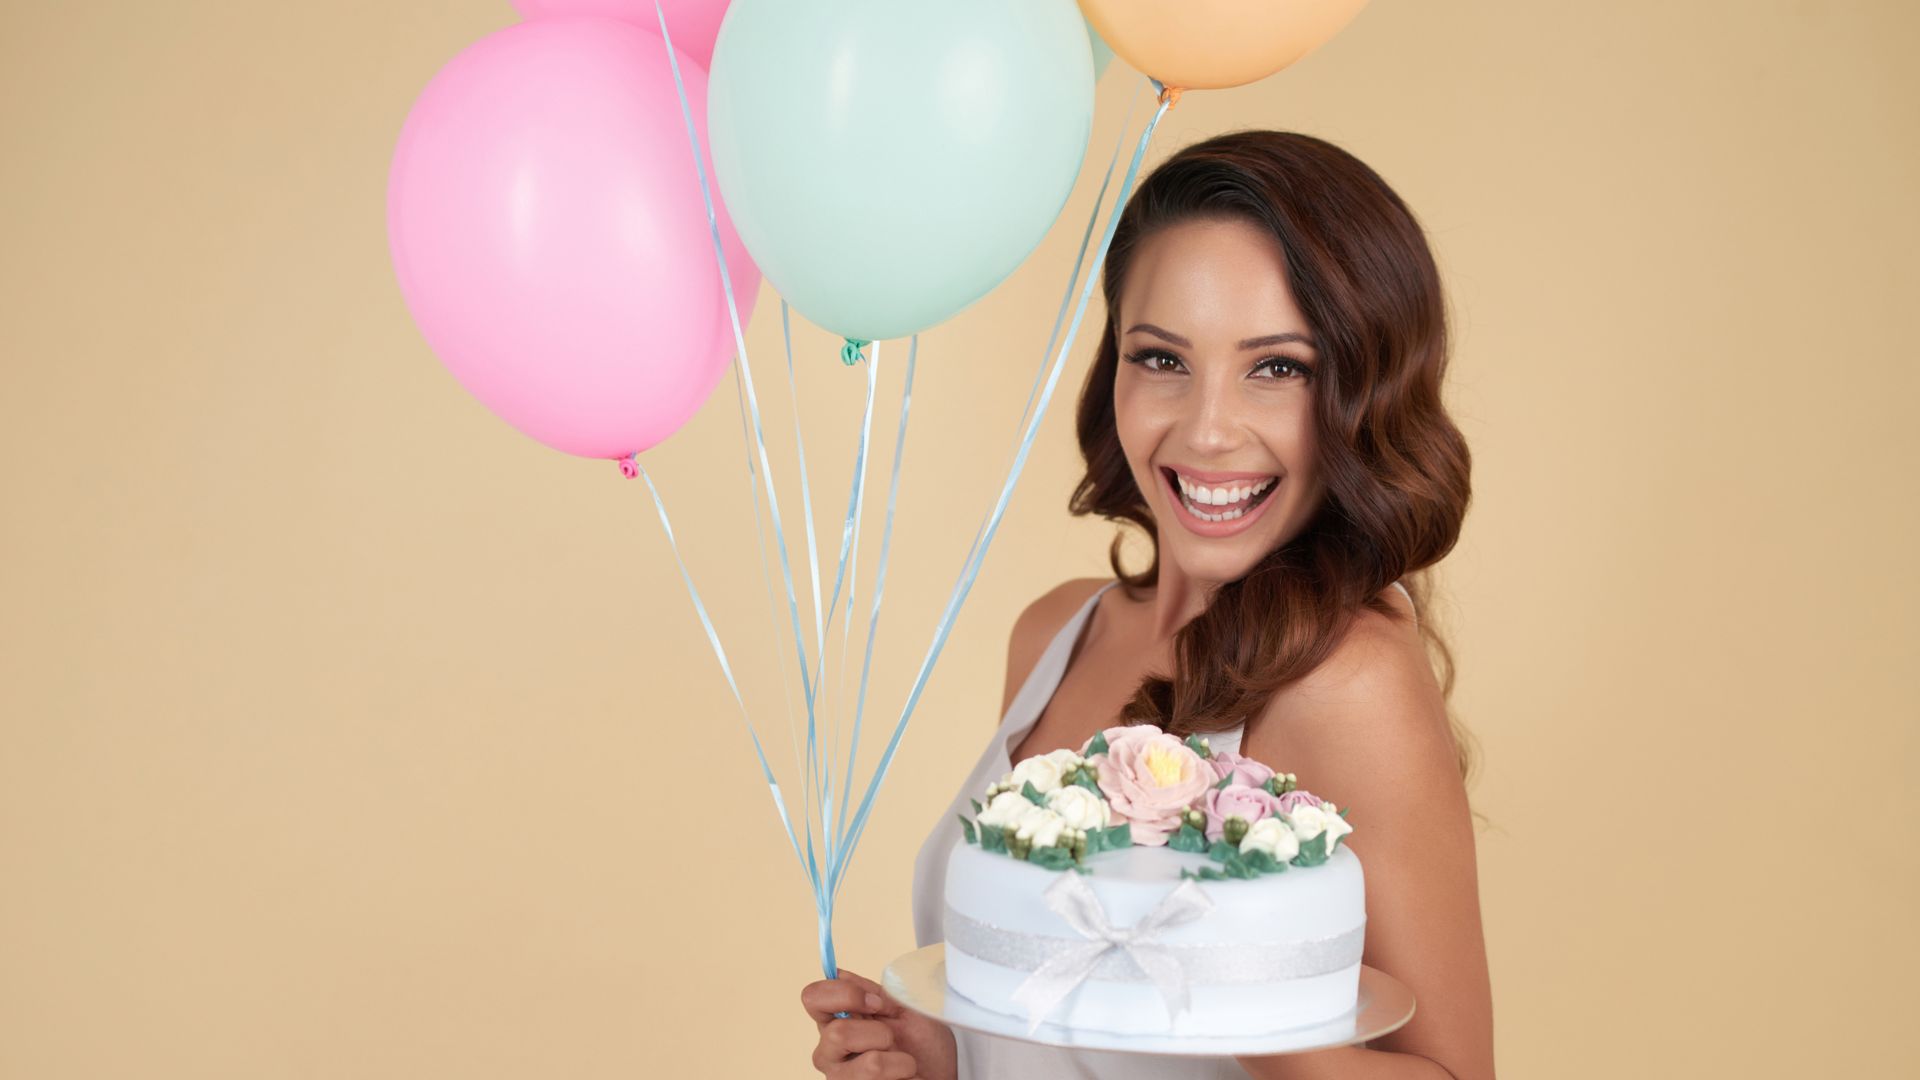 Imagem de uma moça sorrindo, segurando um bolo de aniversário e balões